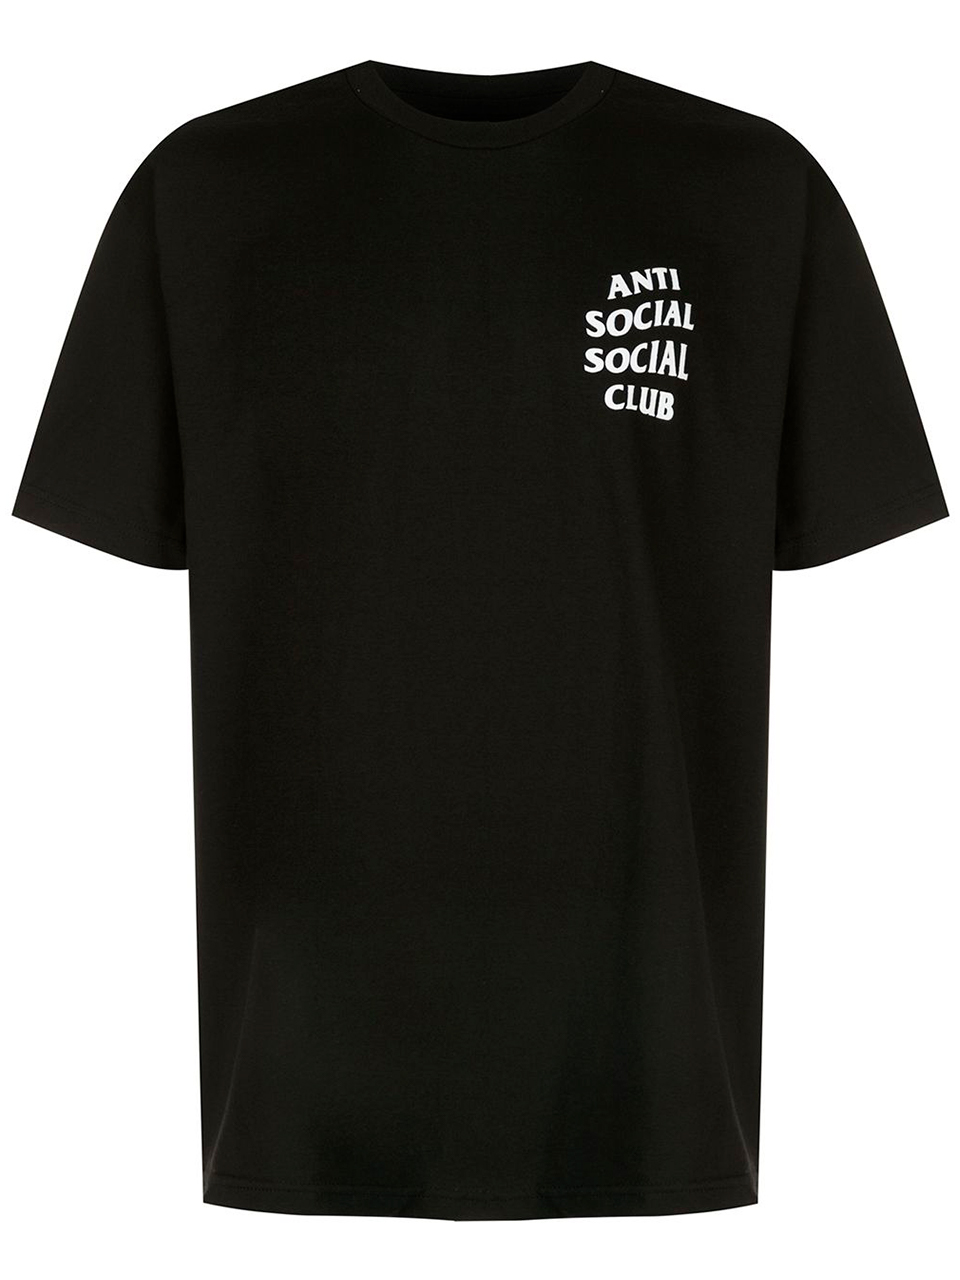 Imagem de: Camiseta Anti Social Social Club Preta com Logo Branco